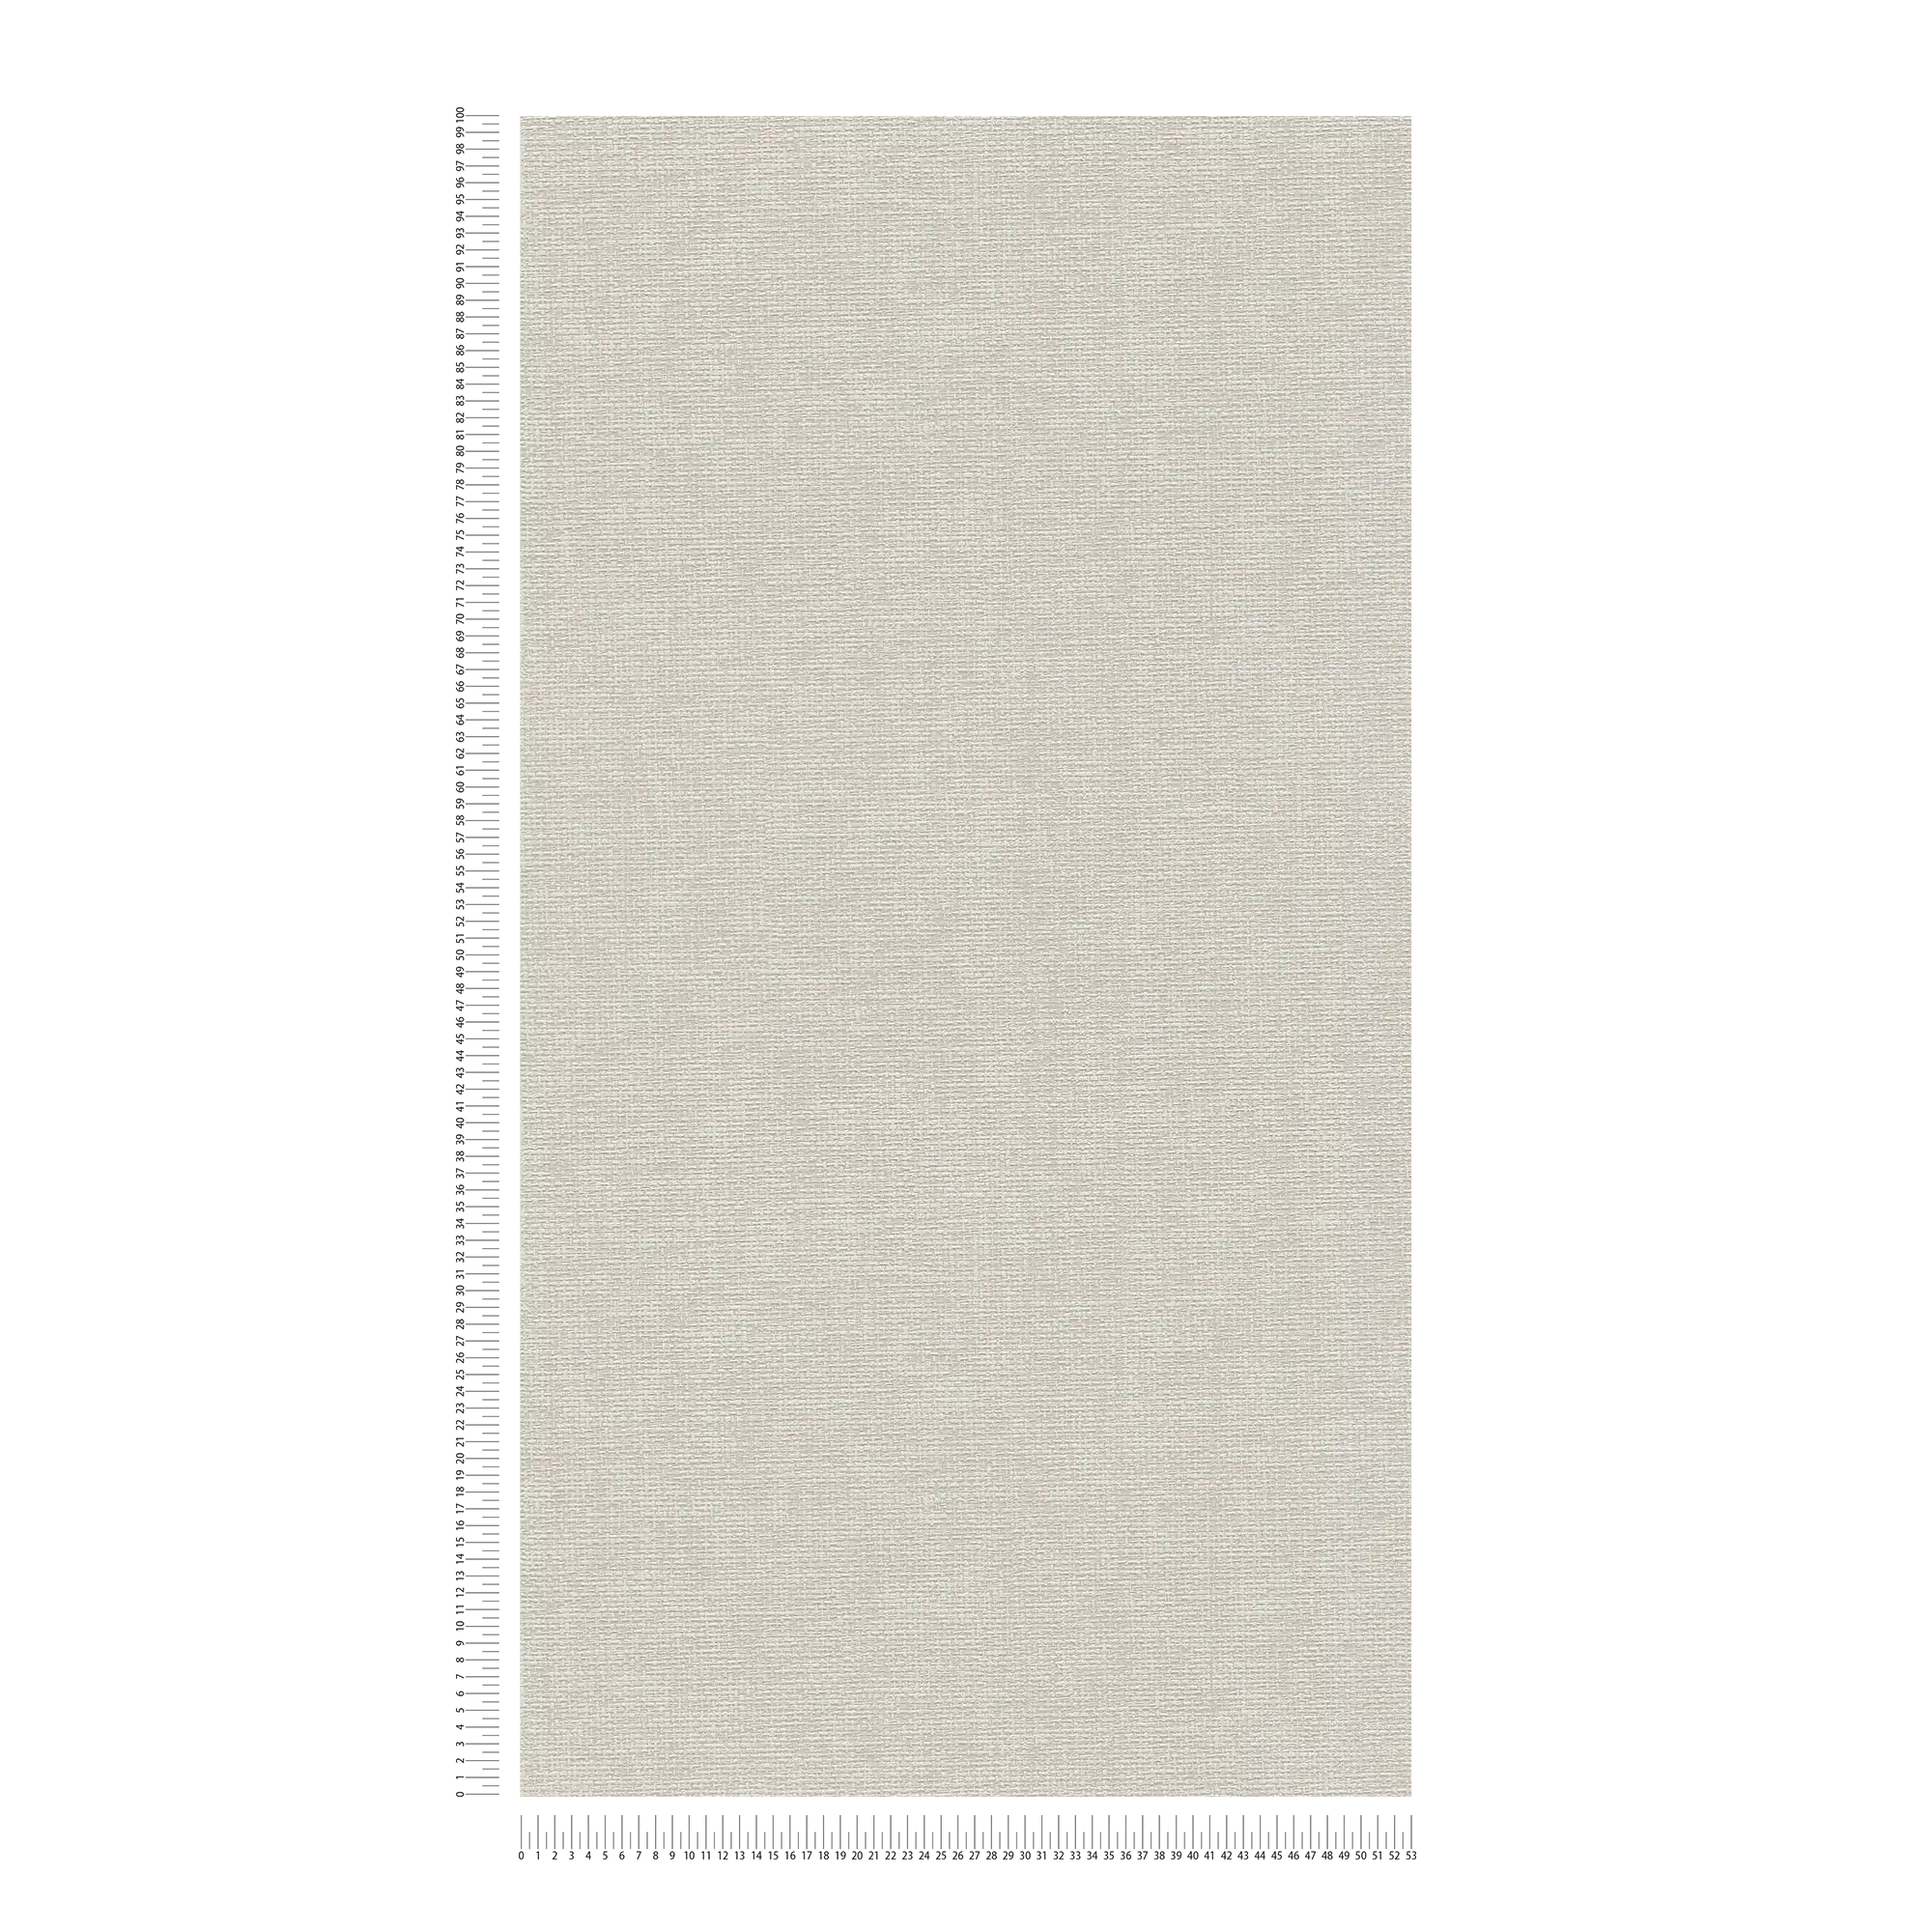             Carta da parati con struttura in tessuto - grigio
        